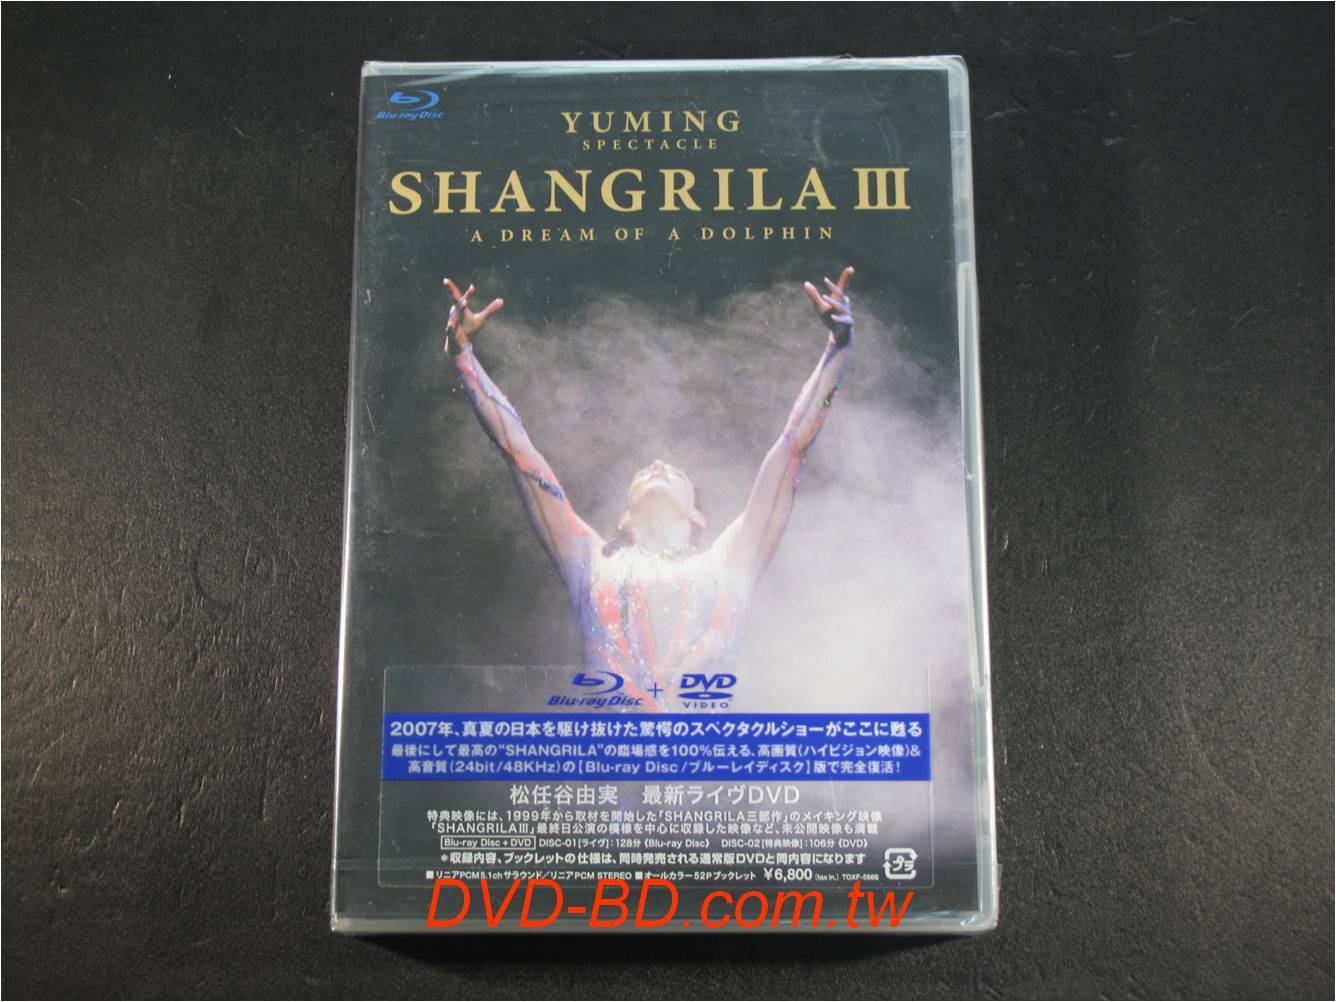 藍光BD] - 松任谷由實2007 Yuming Spectacle Shangrila III A Dream Of Dolphin BD-50G  + DVD - PChome 商店街